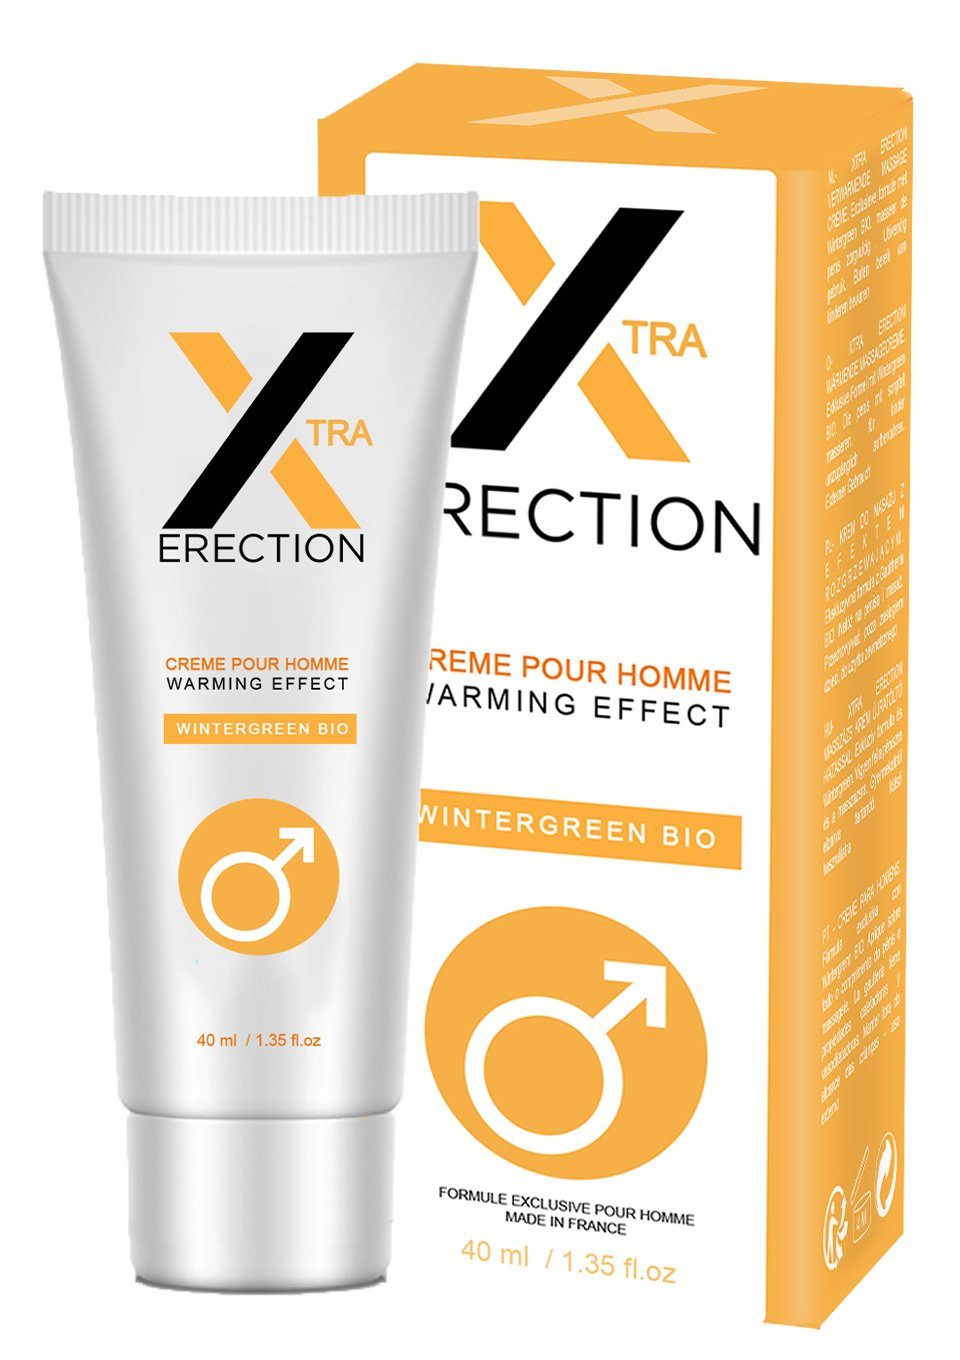 Ruf Stimulationsgel Xtra Erection Erections-Creme mit wärmendem Effekt